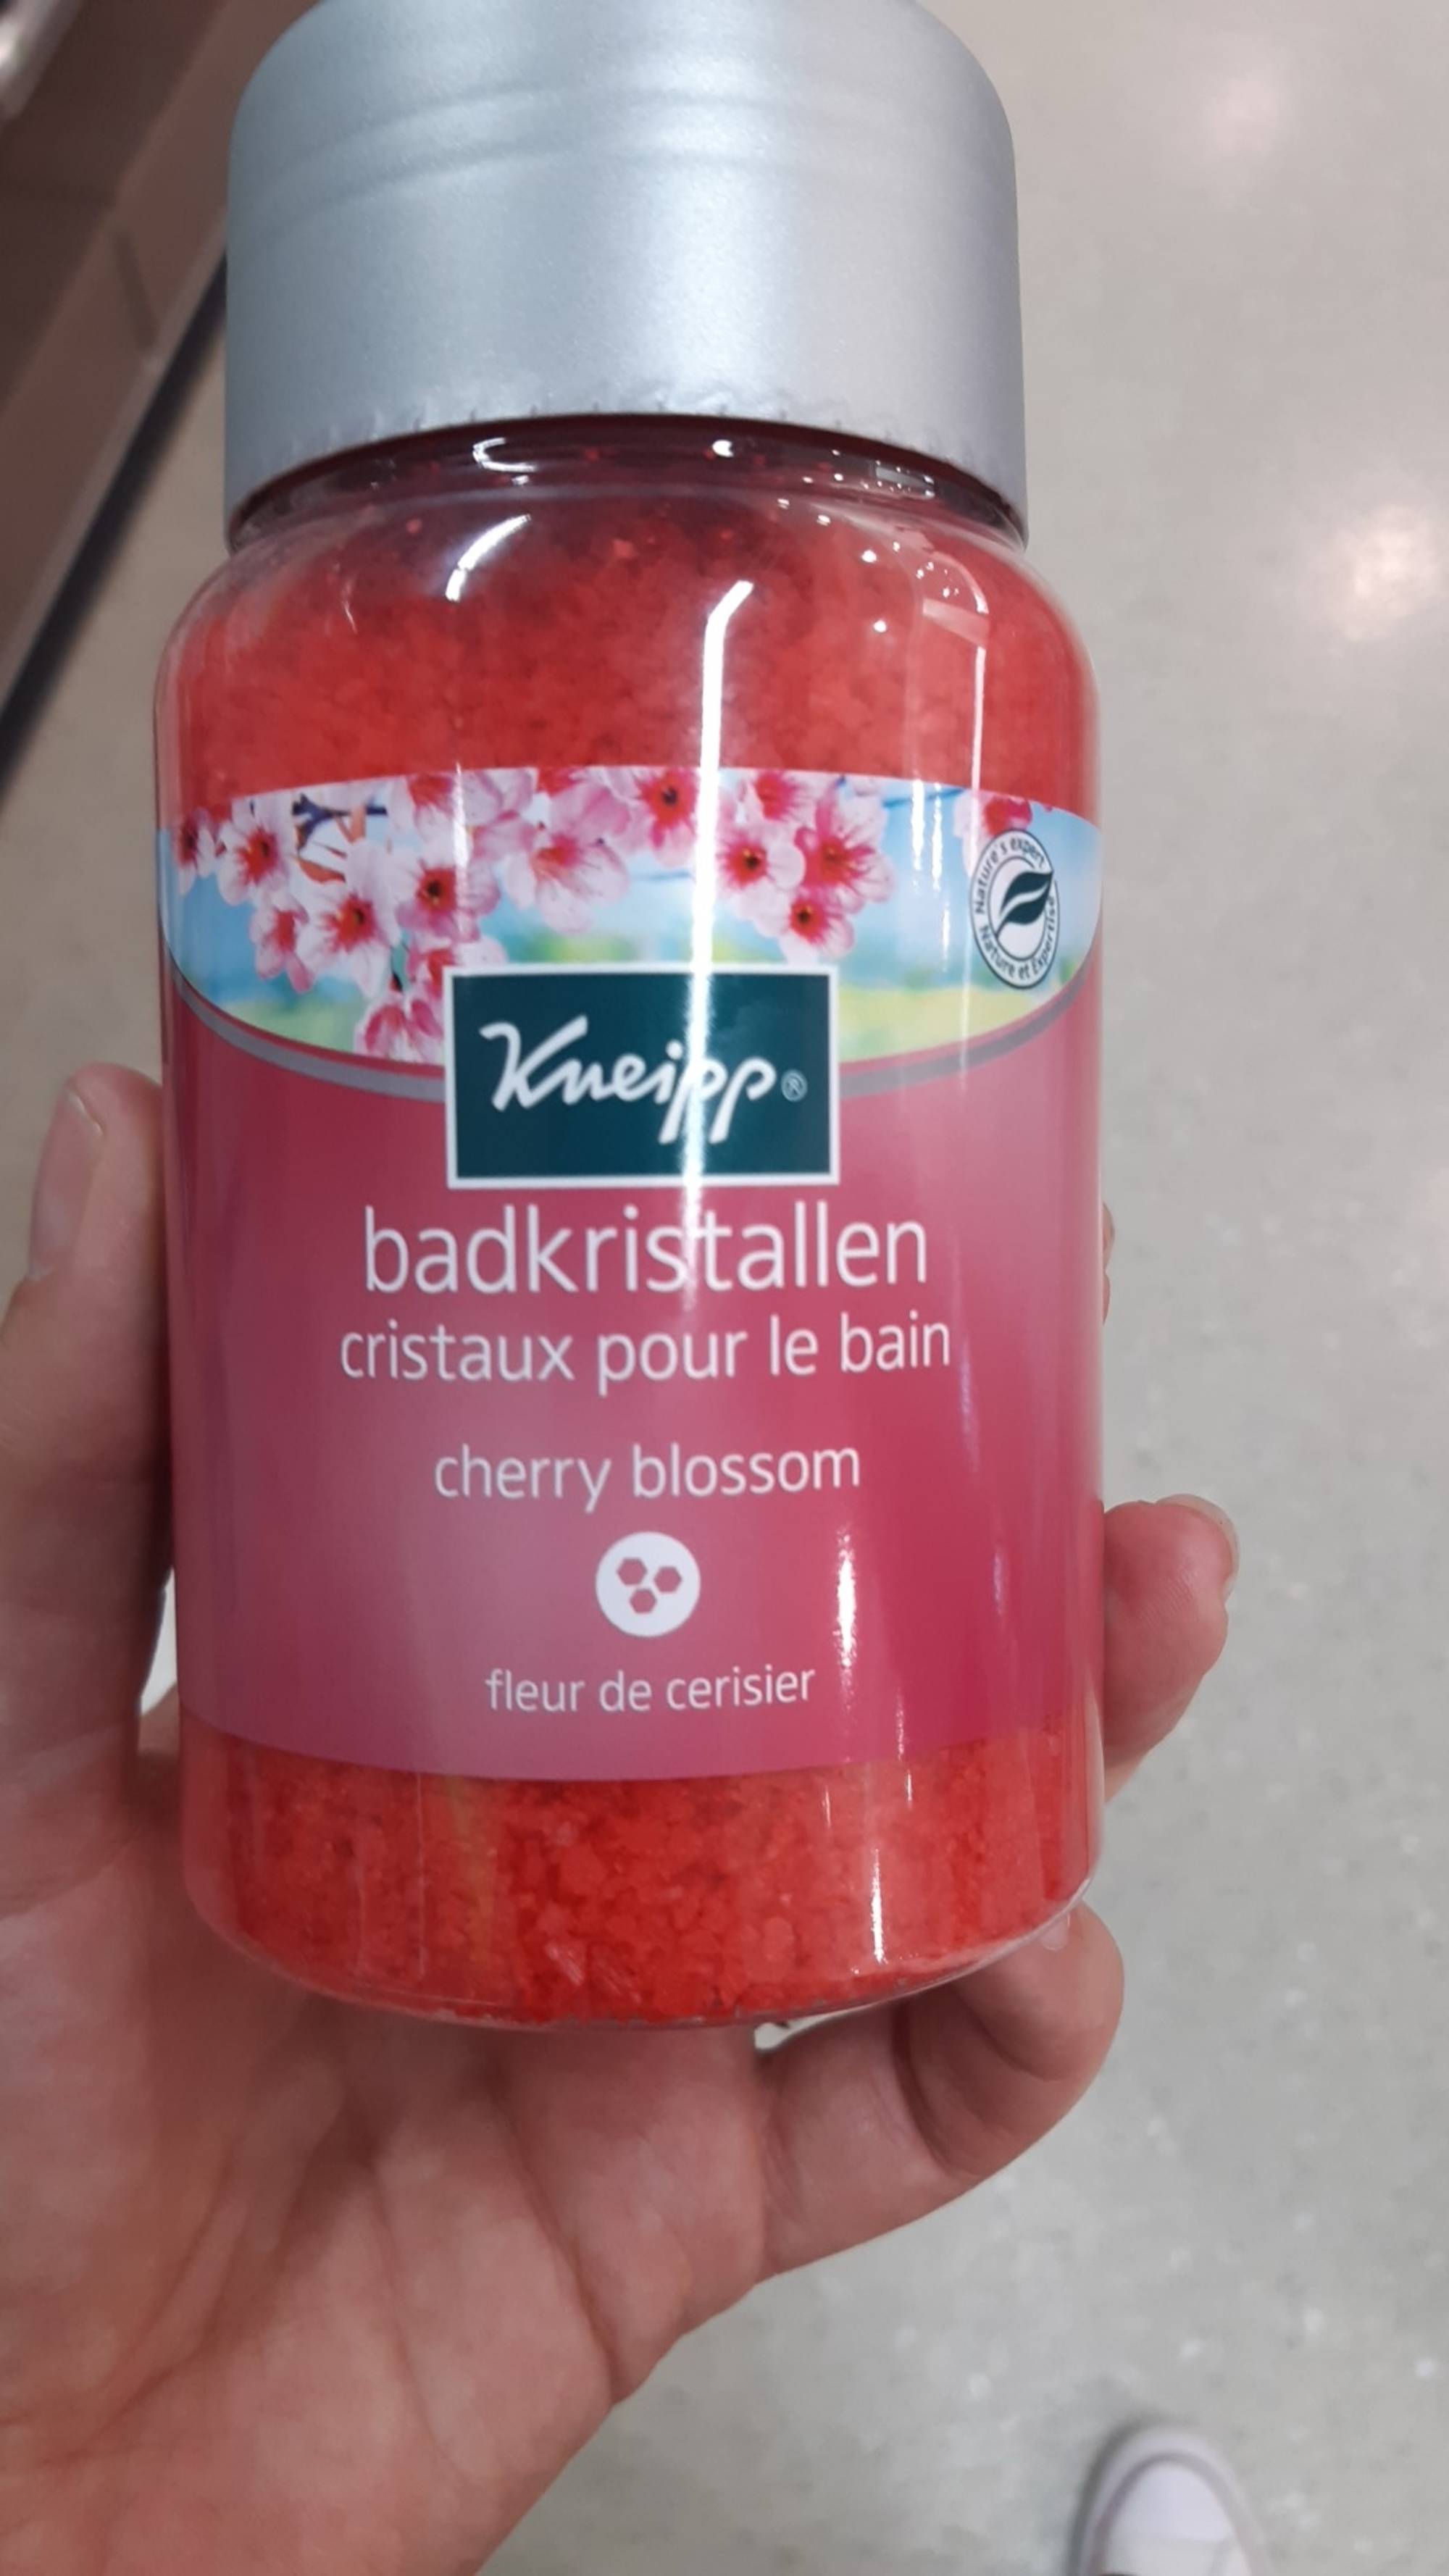 KNEIPP - Fleur de cerisier - Cristaux pour le bain